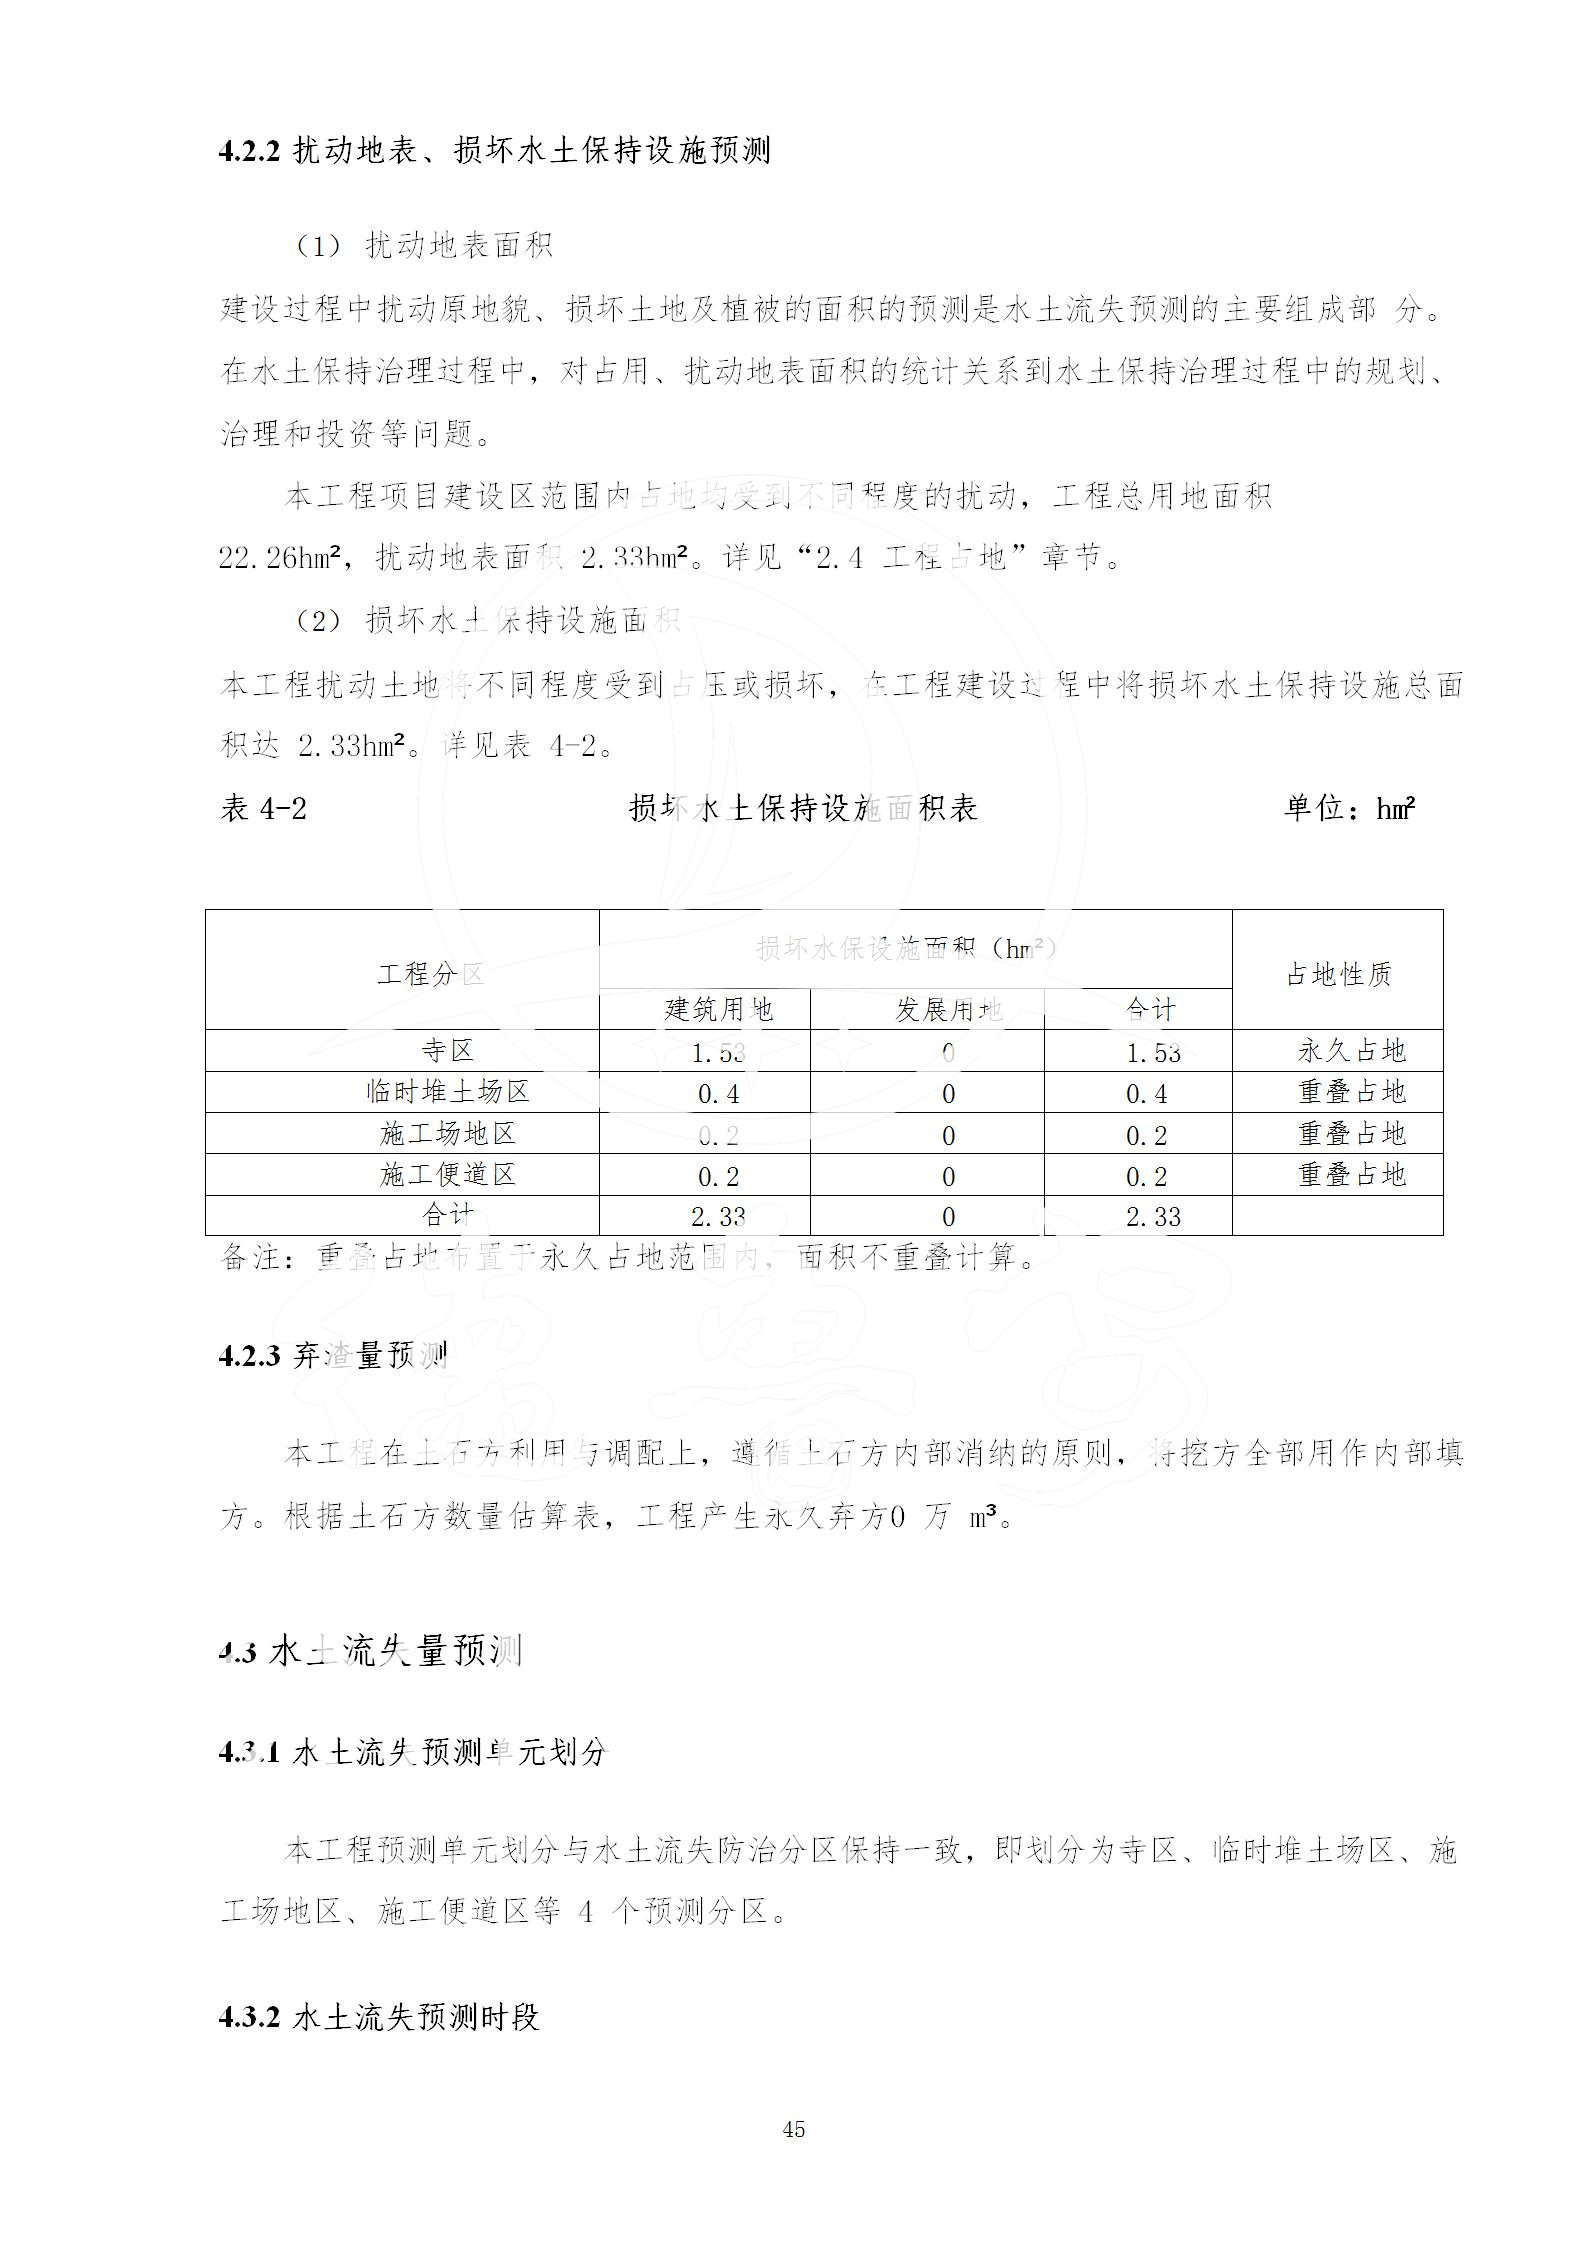 广东省大圣寺水土保持报告  修改稿5_45.jpg